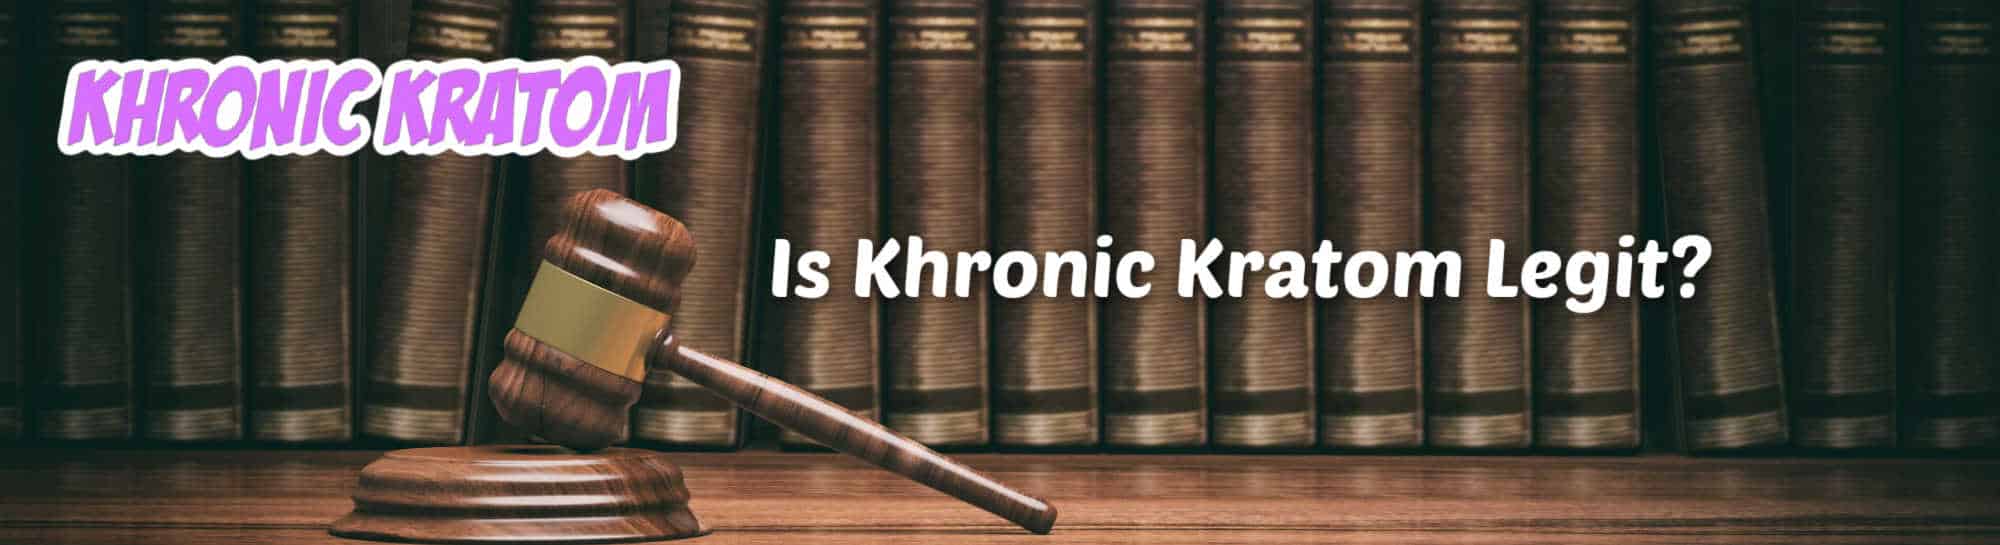 image of is khronic kratom legit